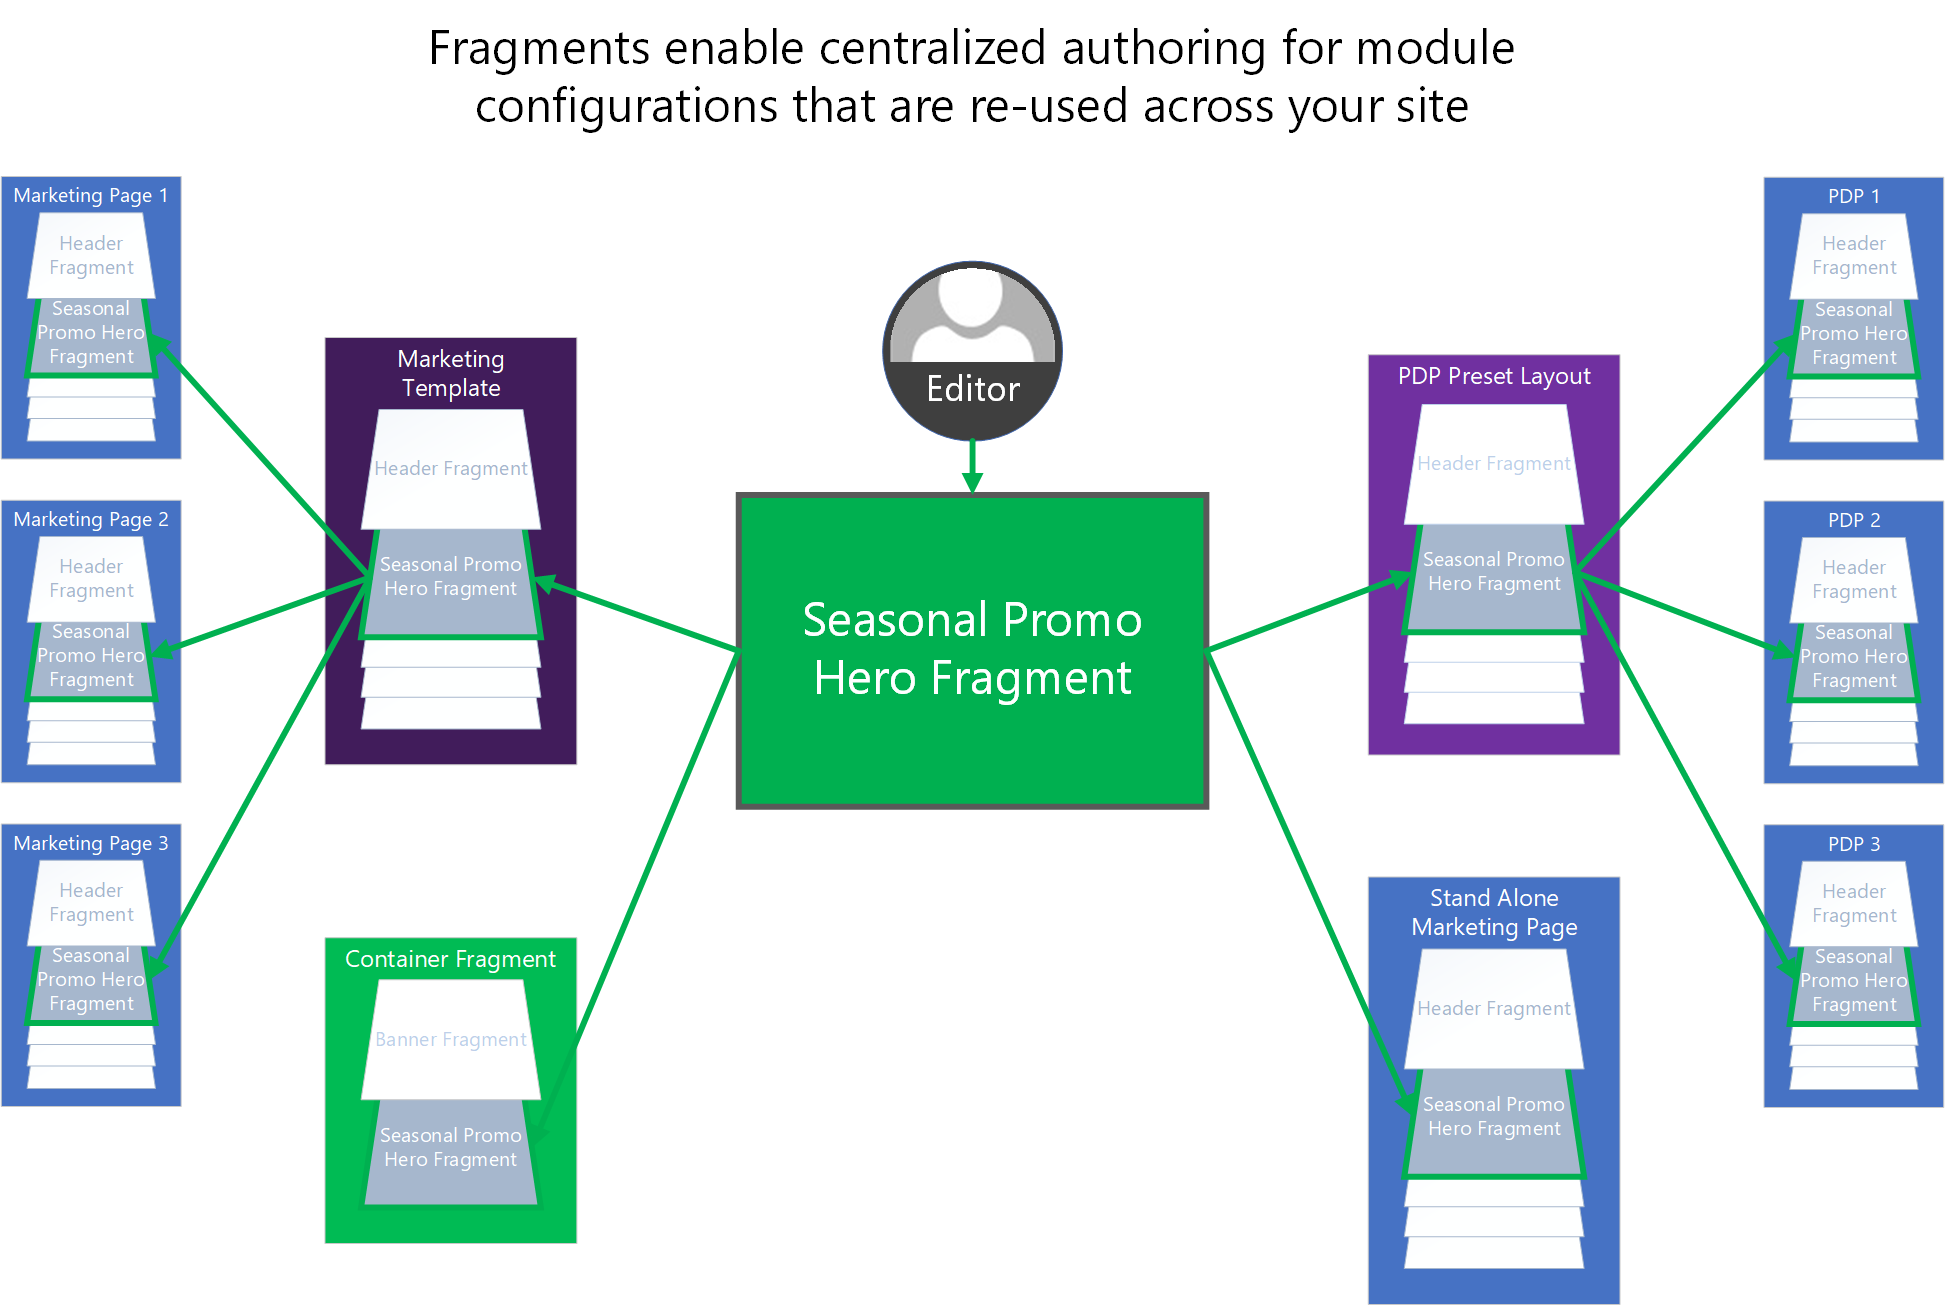 Une illustration affichant comment des fragments peuvent être utilisés pour centraliser la création de configurations de module partagées dans un site de commerce électronique.